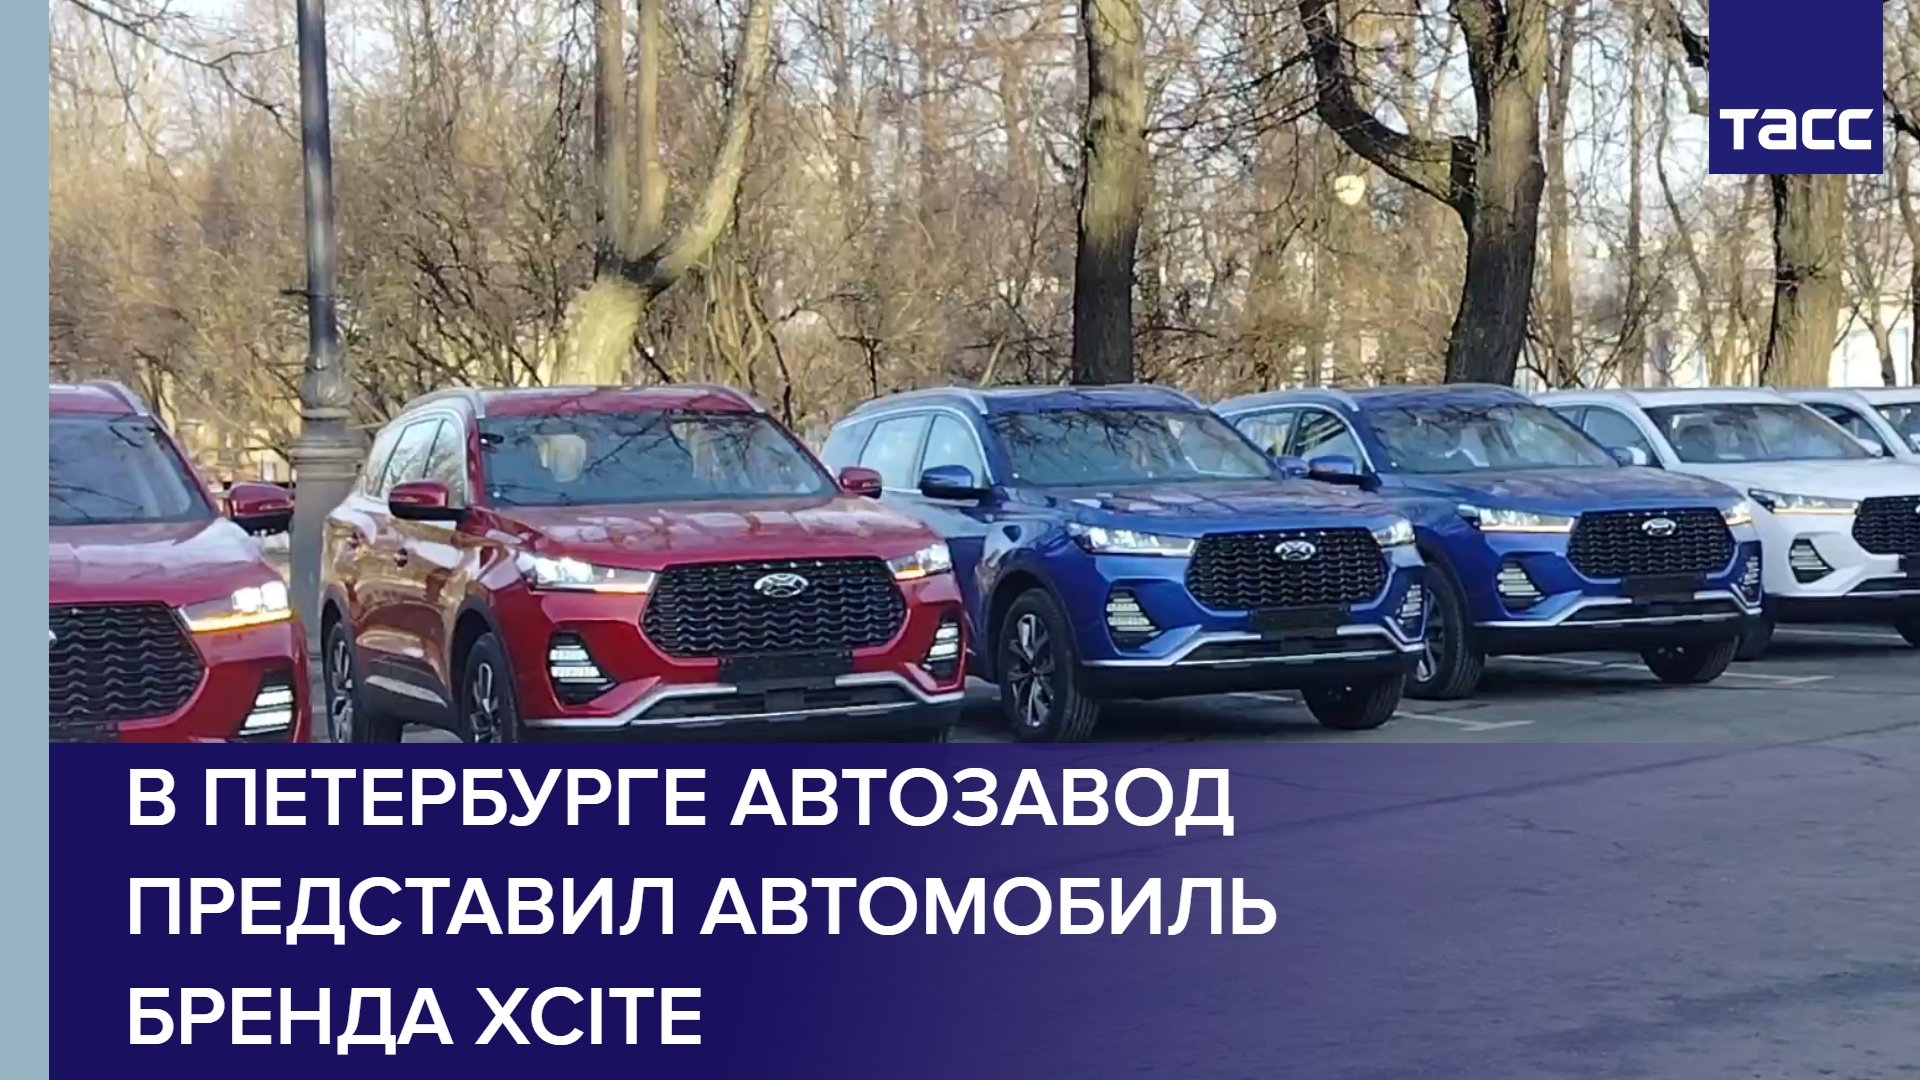 В Петербурге автозавод представил автомобиль бренда Xcite #shorts